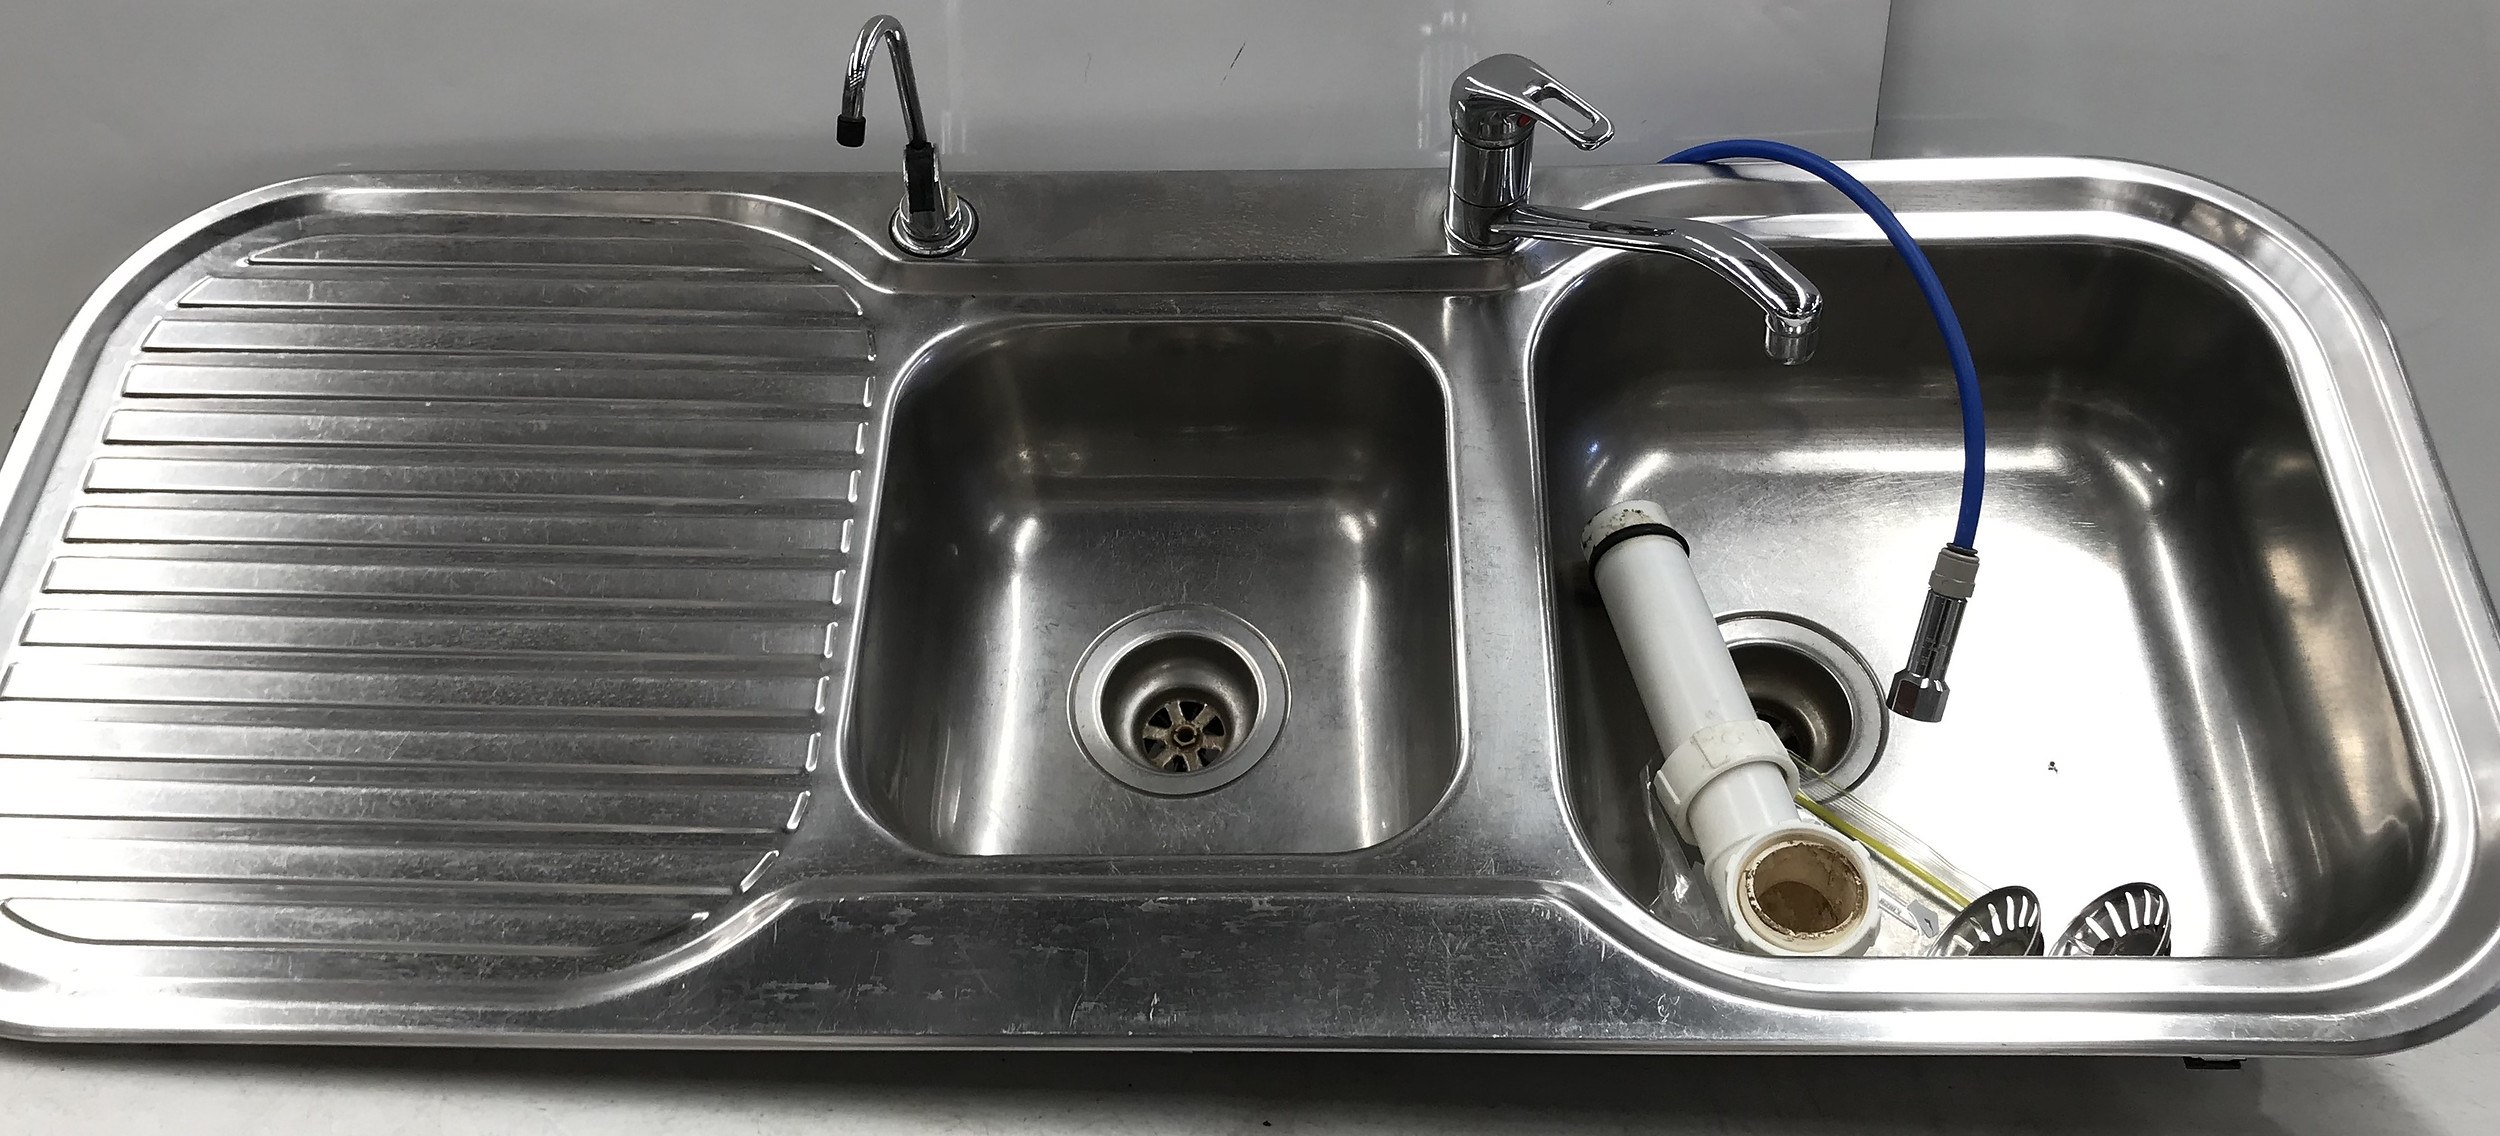 clark kitchen sink australia